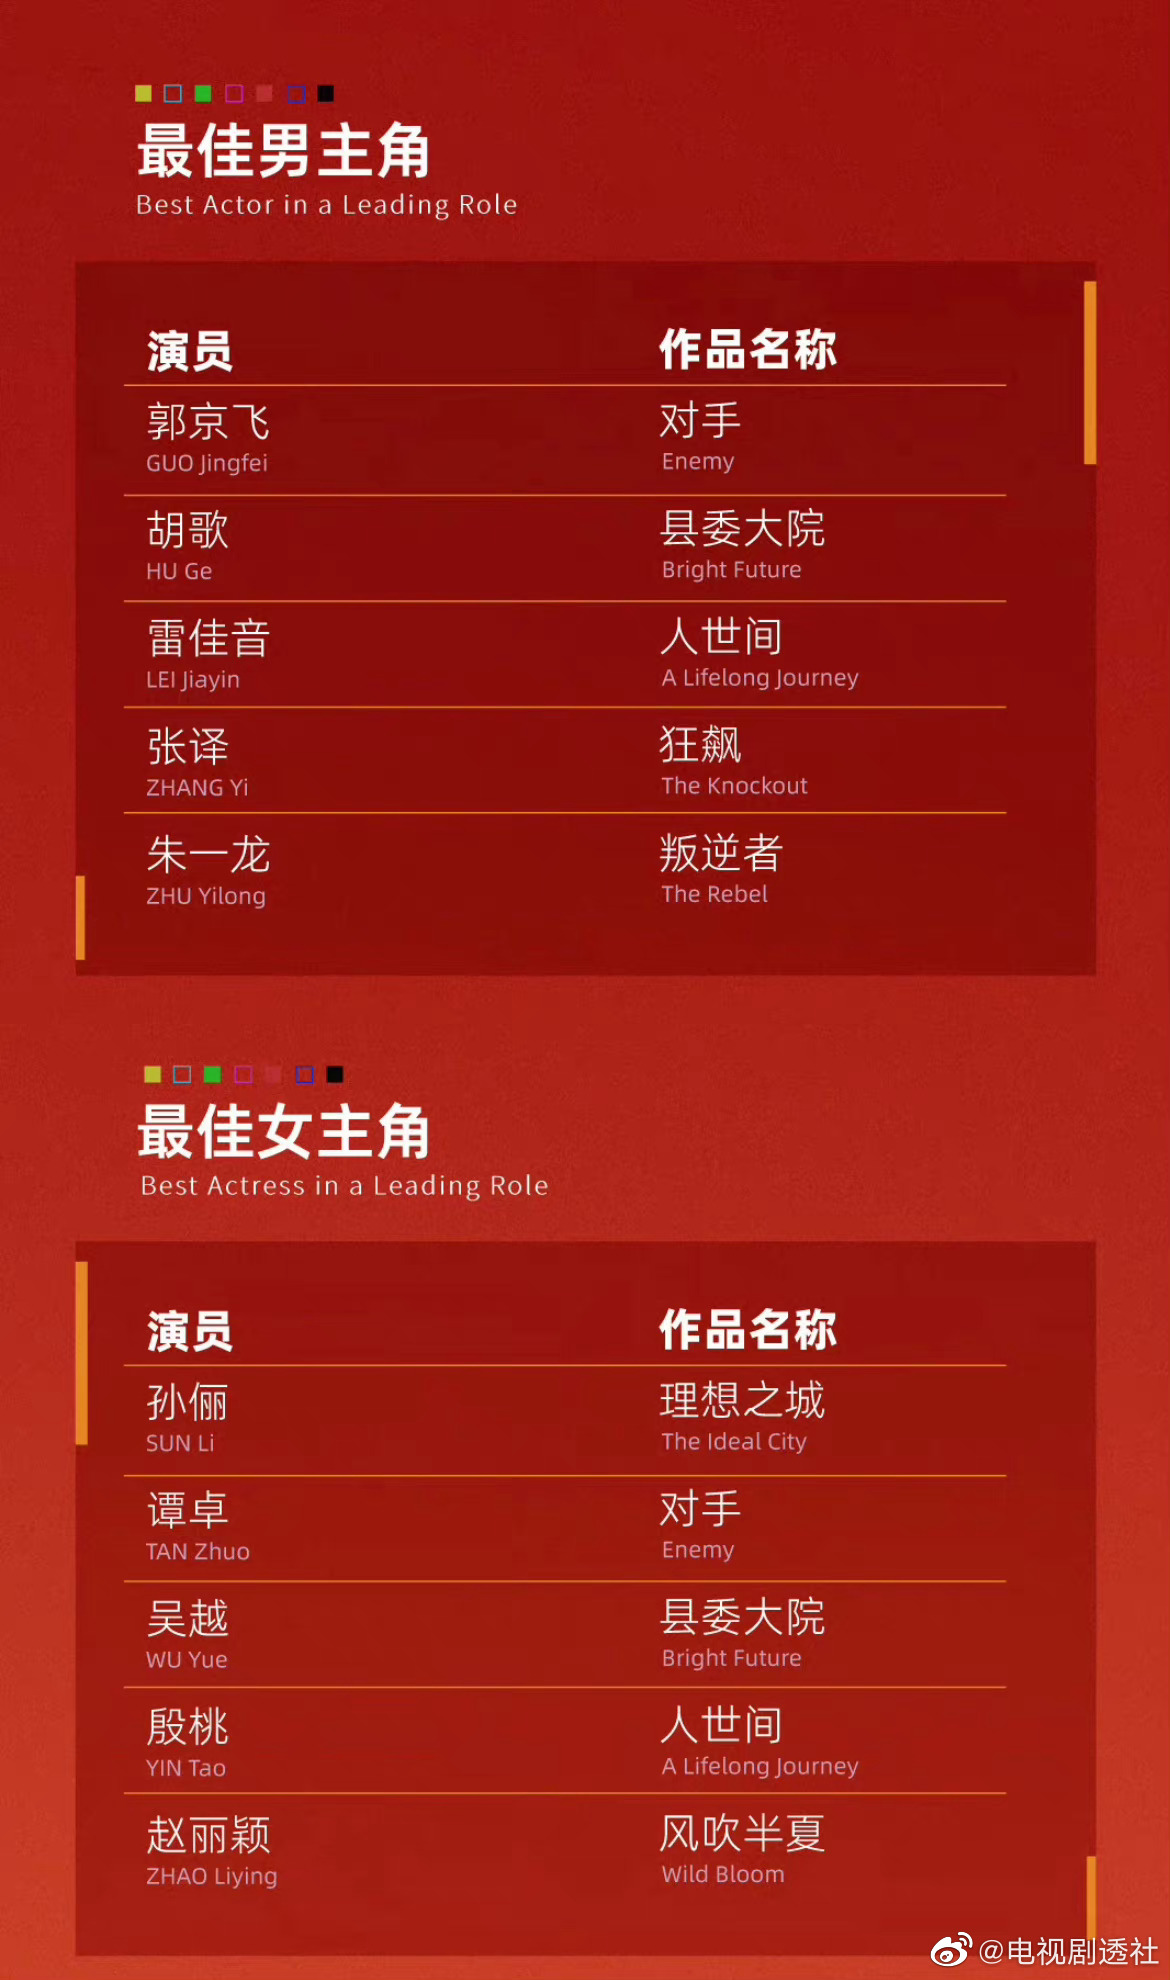 2019白玉兰奖入围名单揭晓 《见字如面3》《一本好书》入围